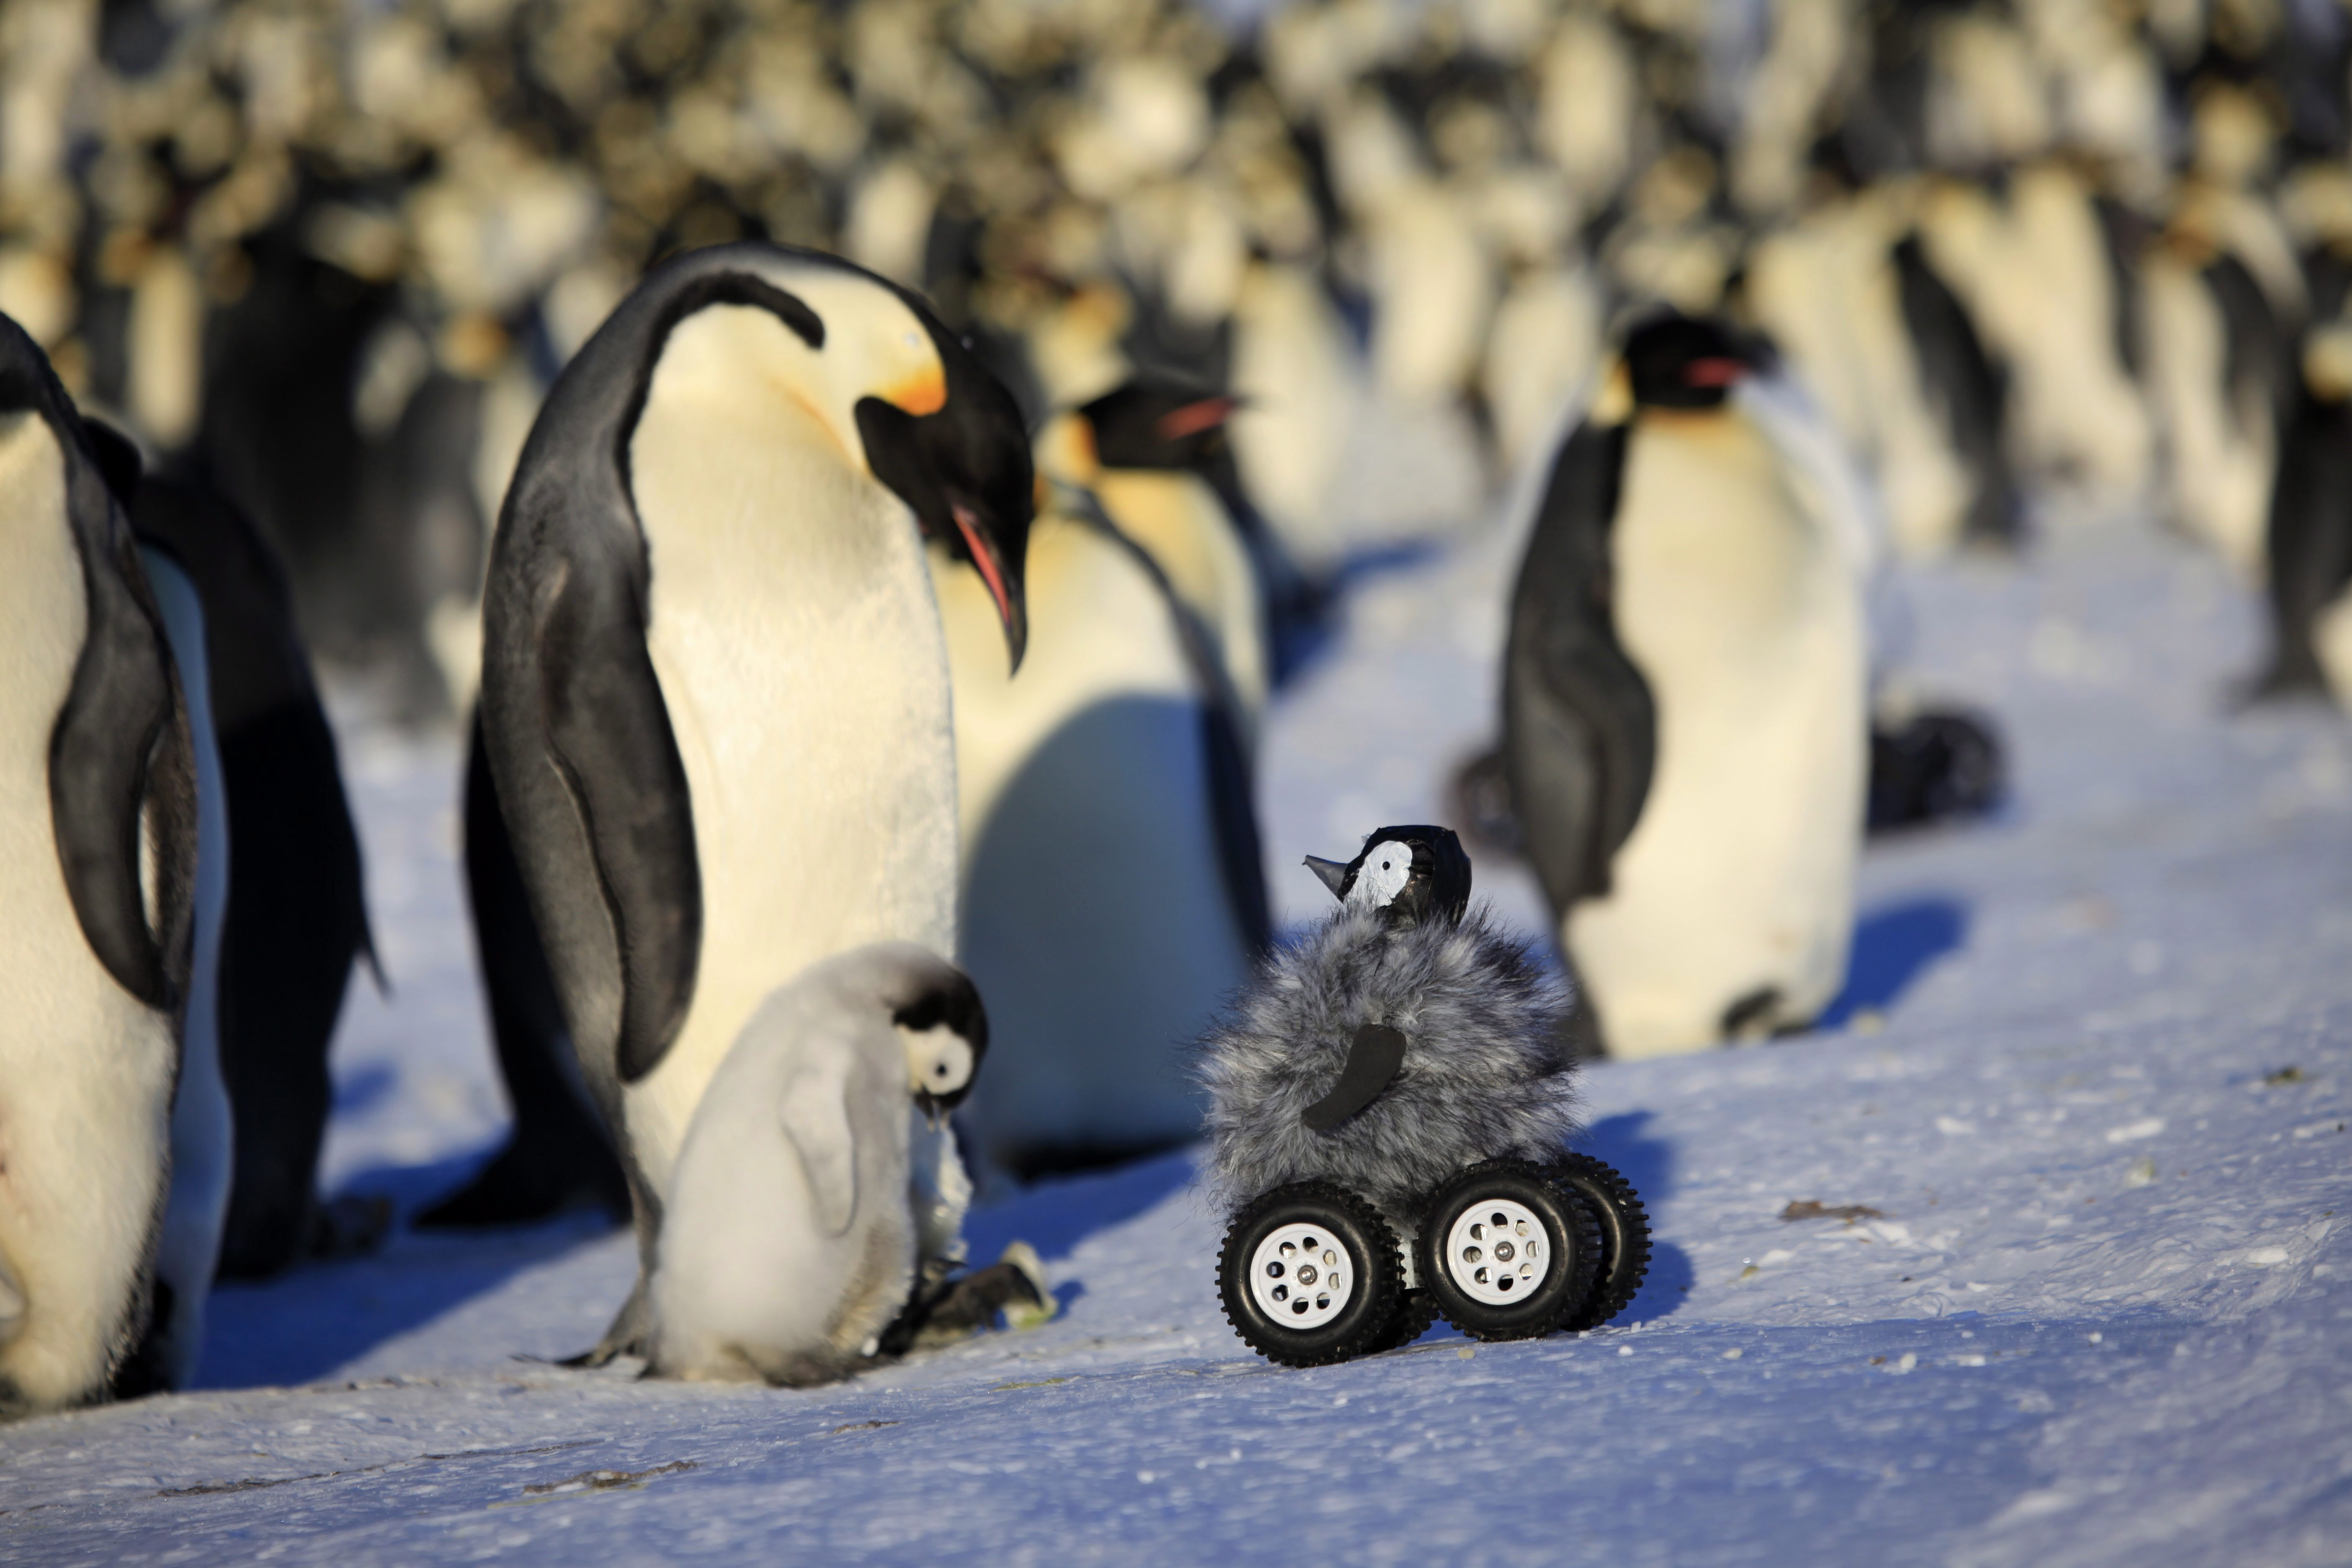 Az Adélie-pingvinek az öntudat jelét mutatták a tükörteszten a kutatók szerint